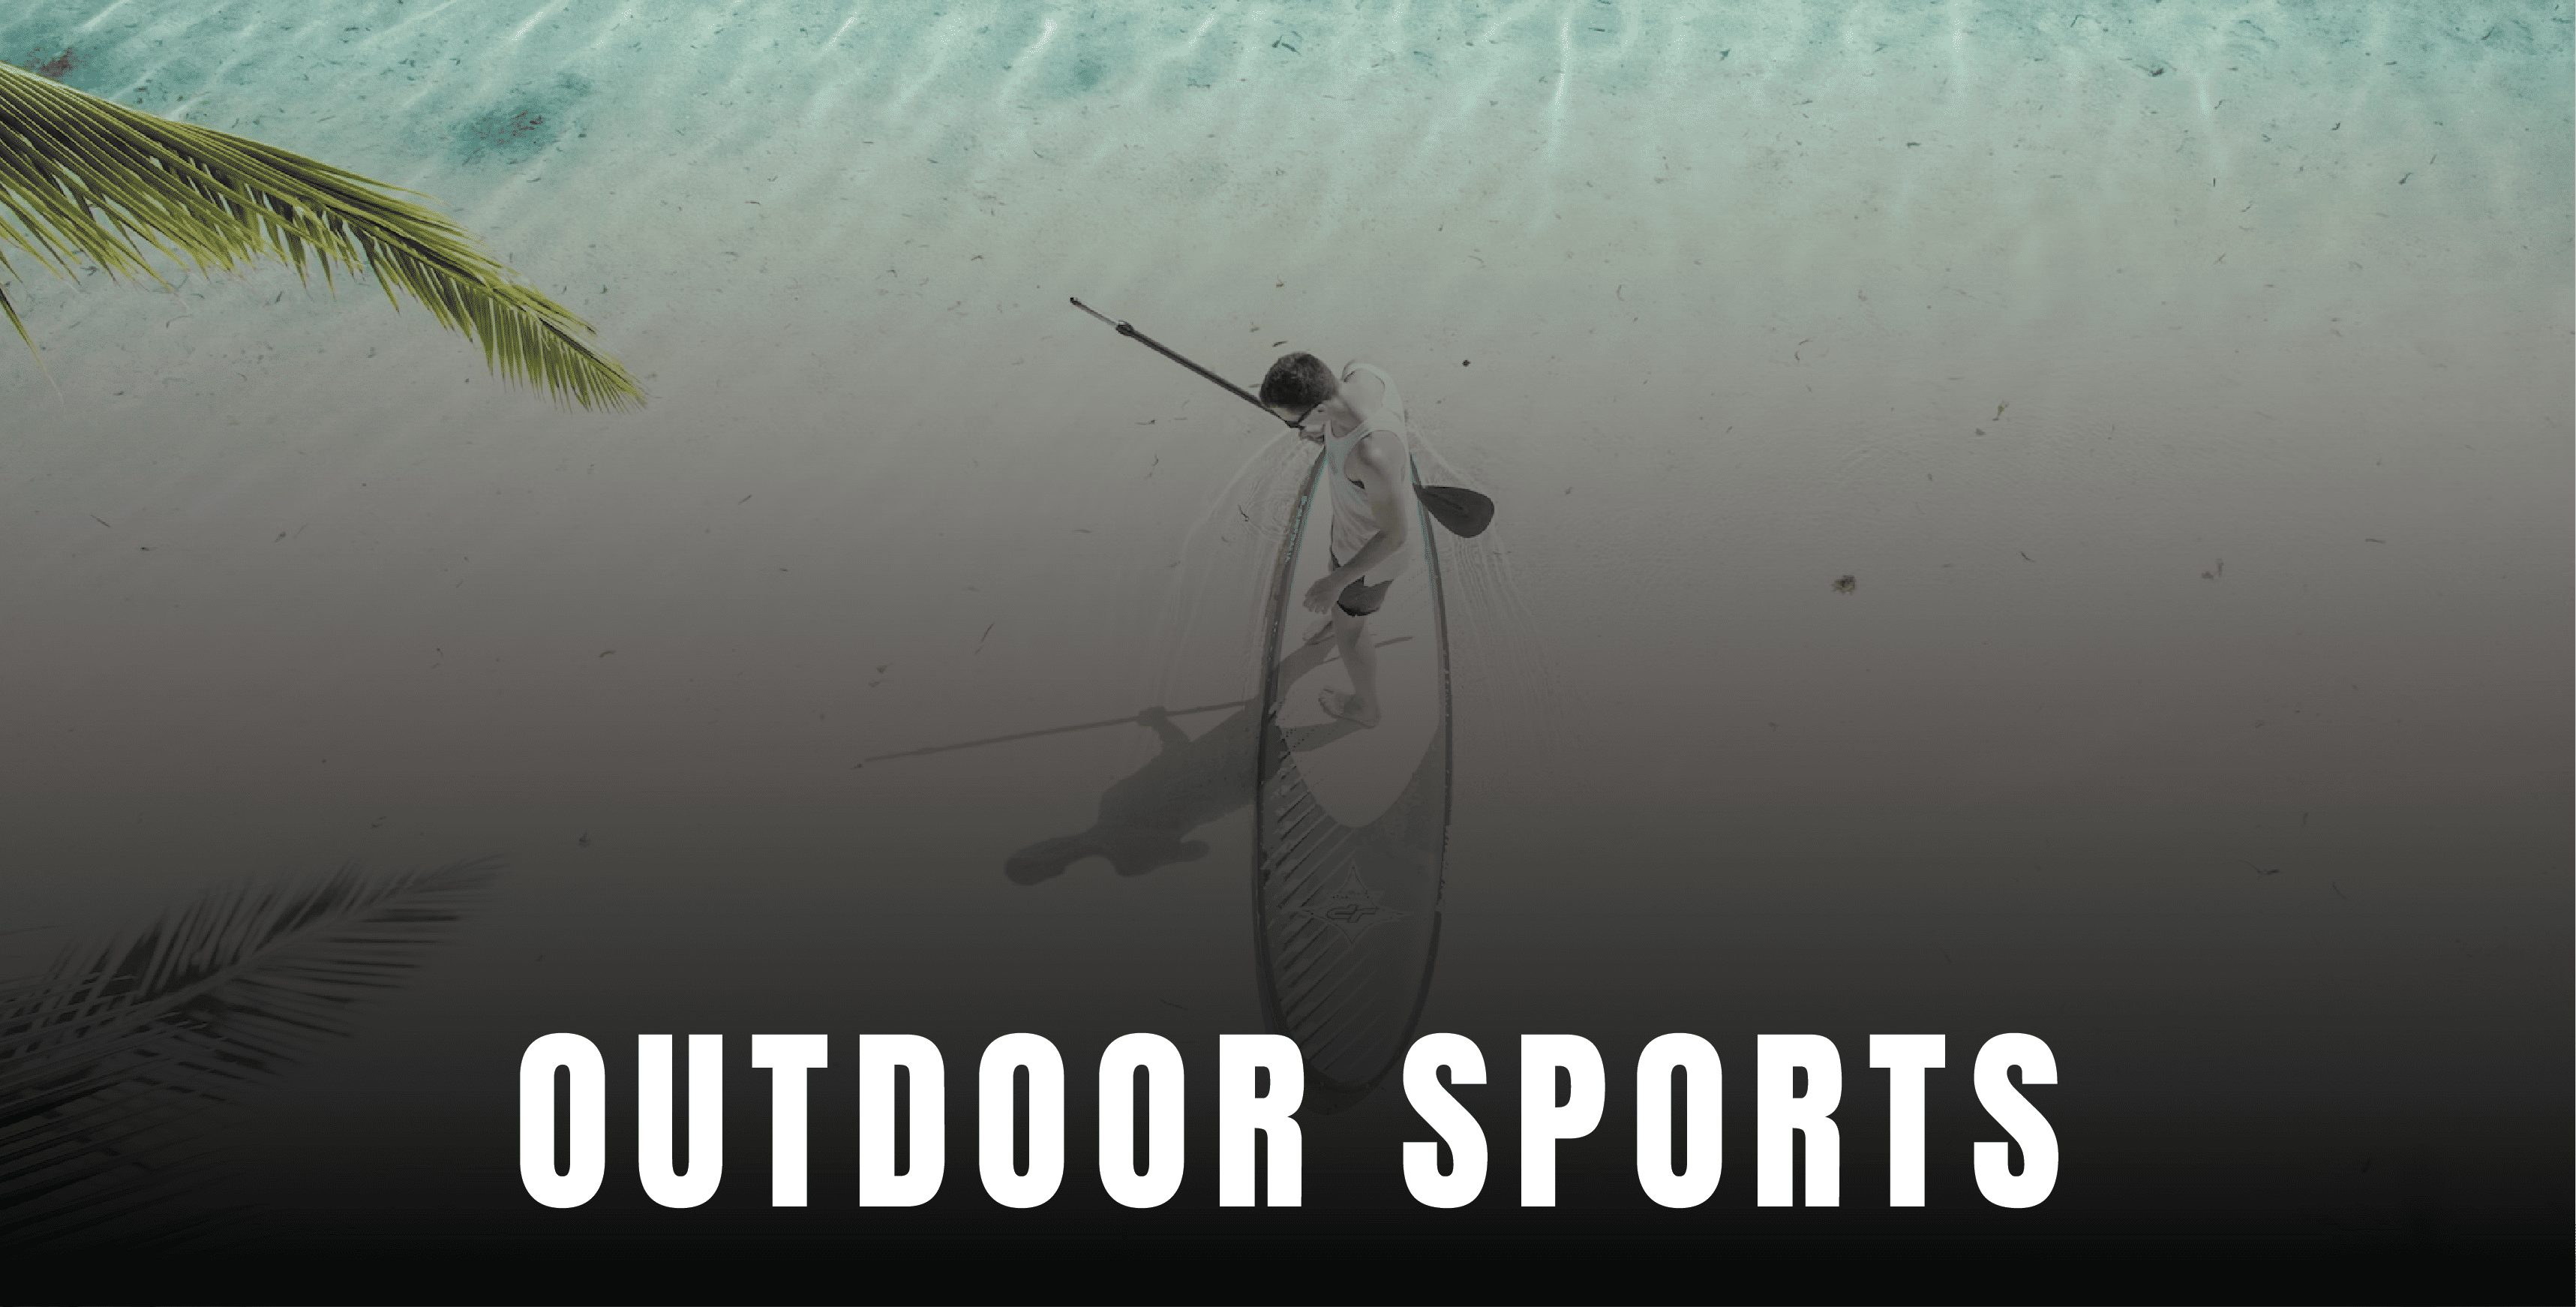 Outdoor activities or water sports